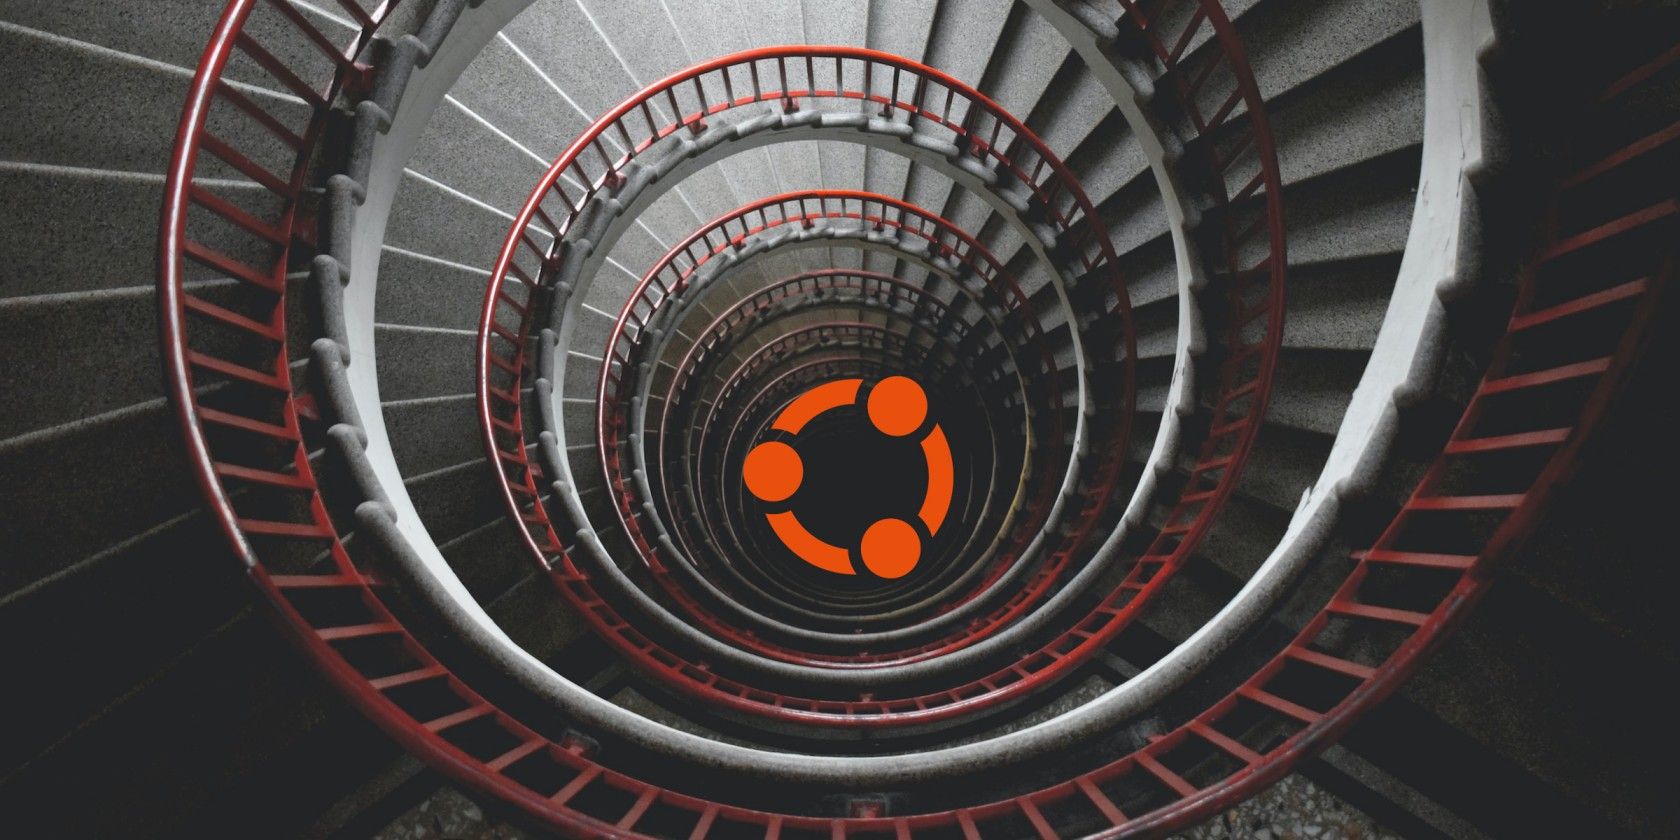 Ubuntu spiral login loop depicted